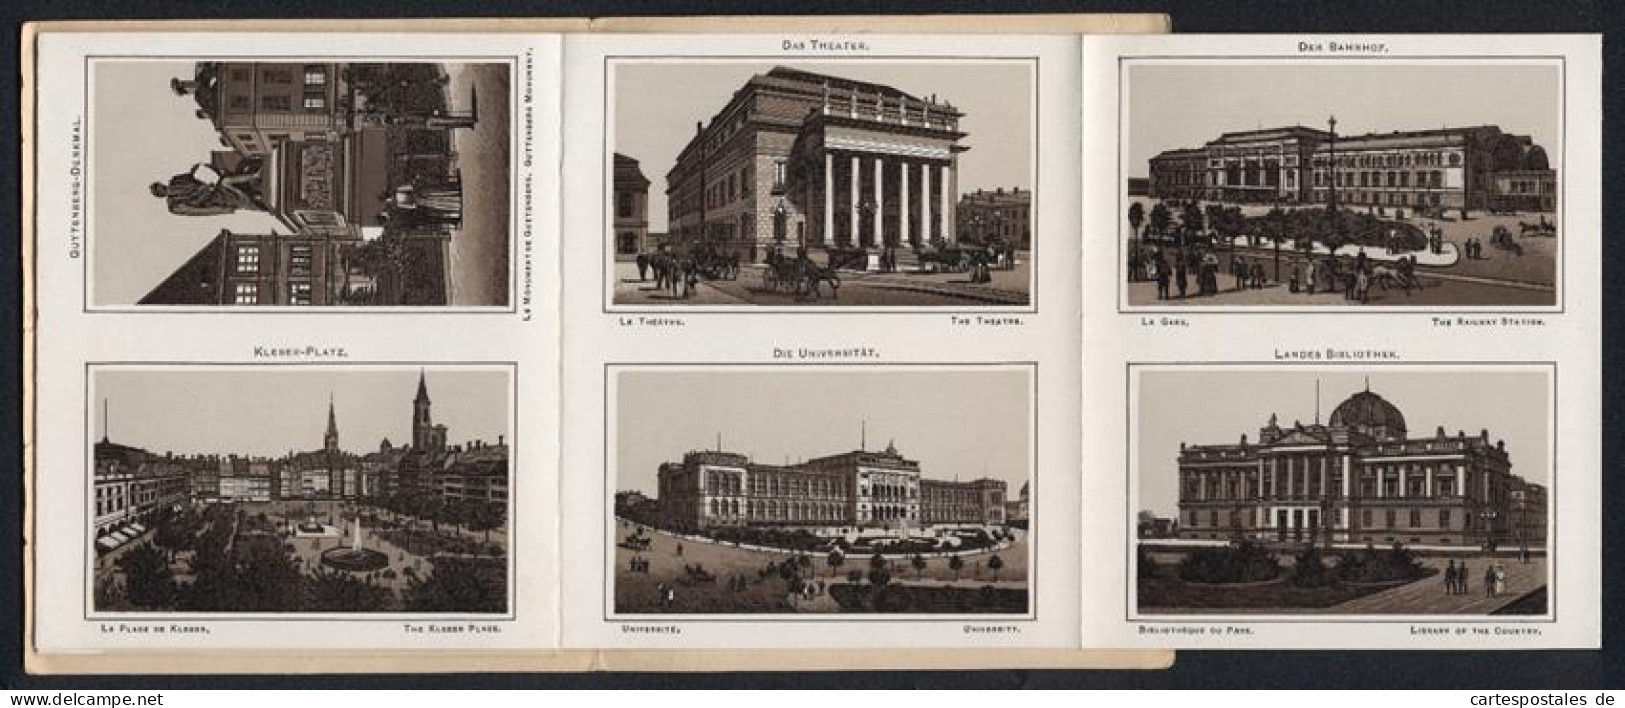 Leporello-Album 24 Lithographie-Ansichten Strassburg I. E., Bahnhof, Landesausschuss-Gebäude, Frauenhaus, Kleber-Platz  - Litografia